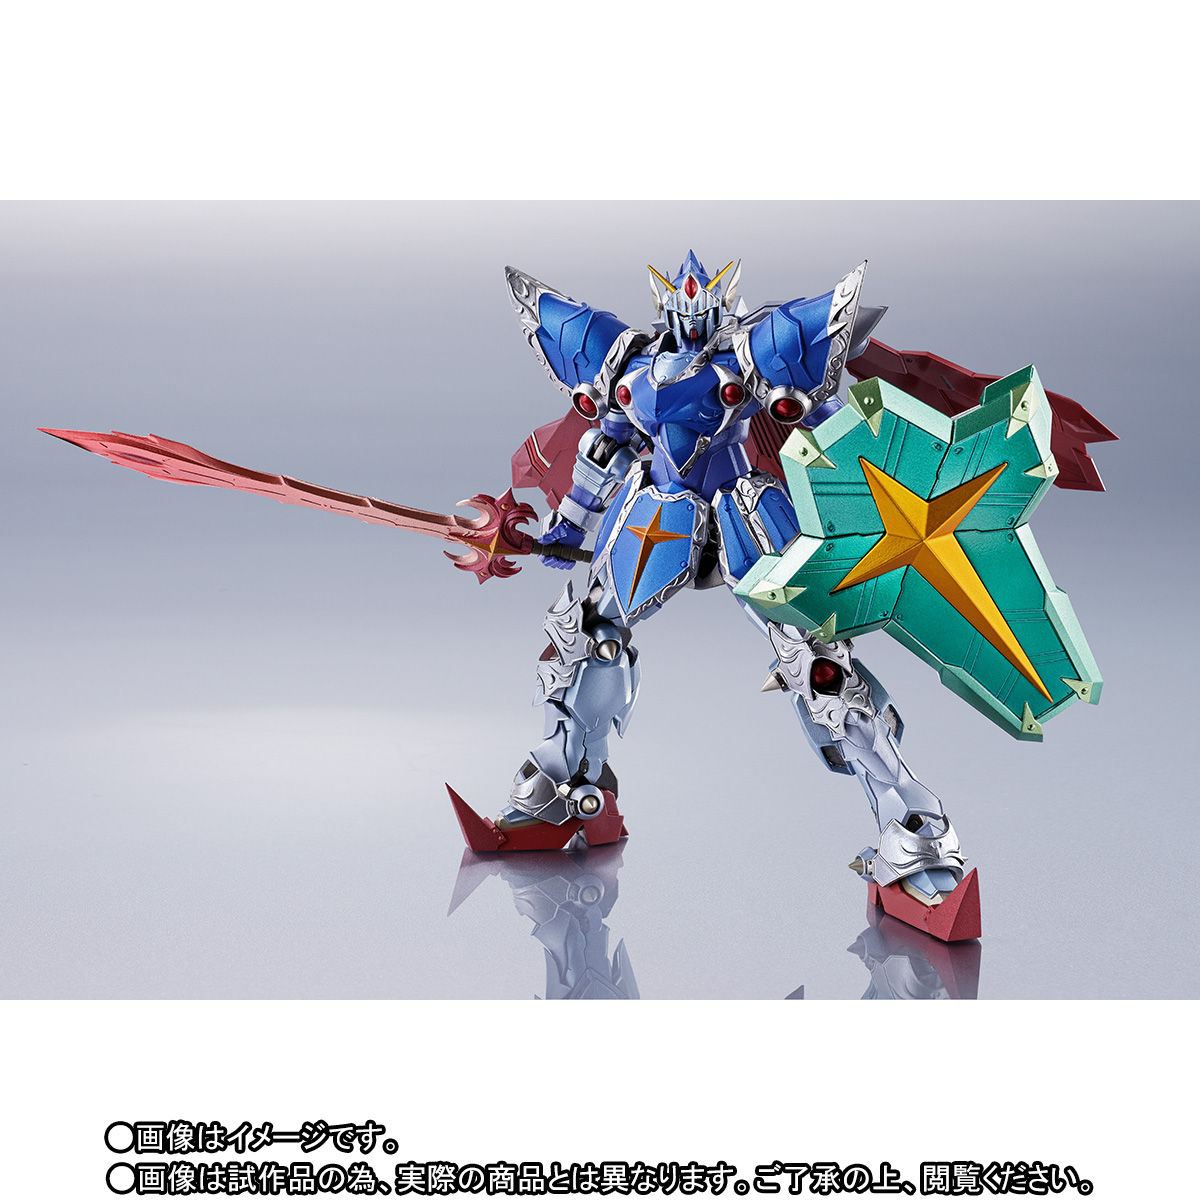 METAL ROBOT SPIRITS -SIDE MS- SD GUNDAM GAIDEN: FULL ARMOR KNIGHT GUNDAM (REAL TYPE VER.) Tamashii (Bandai Toys)